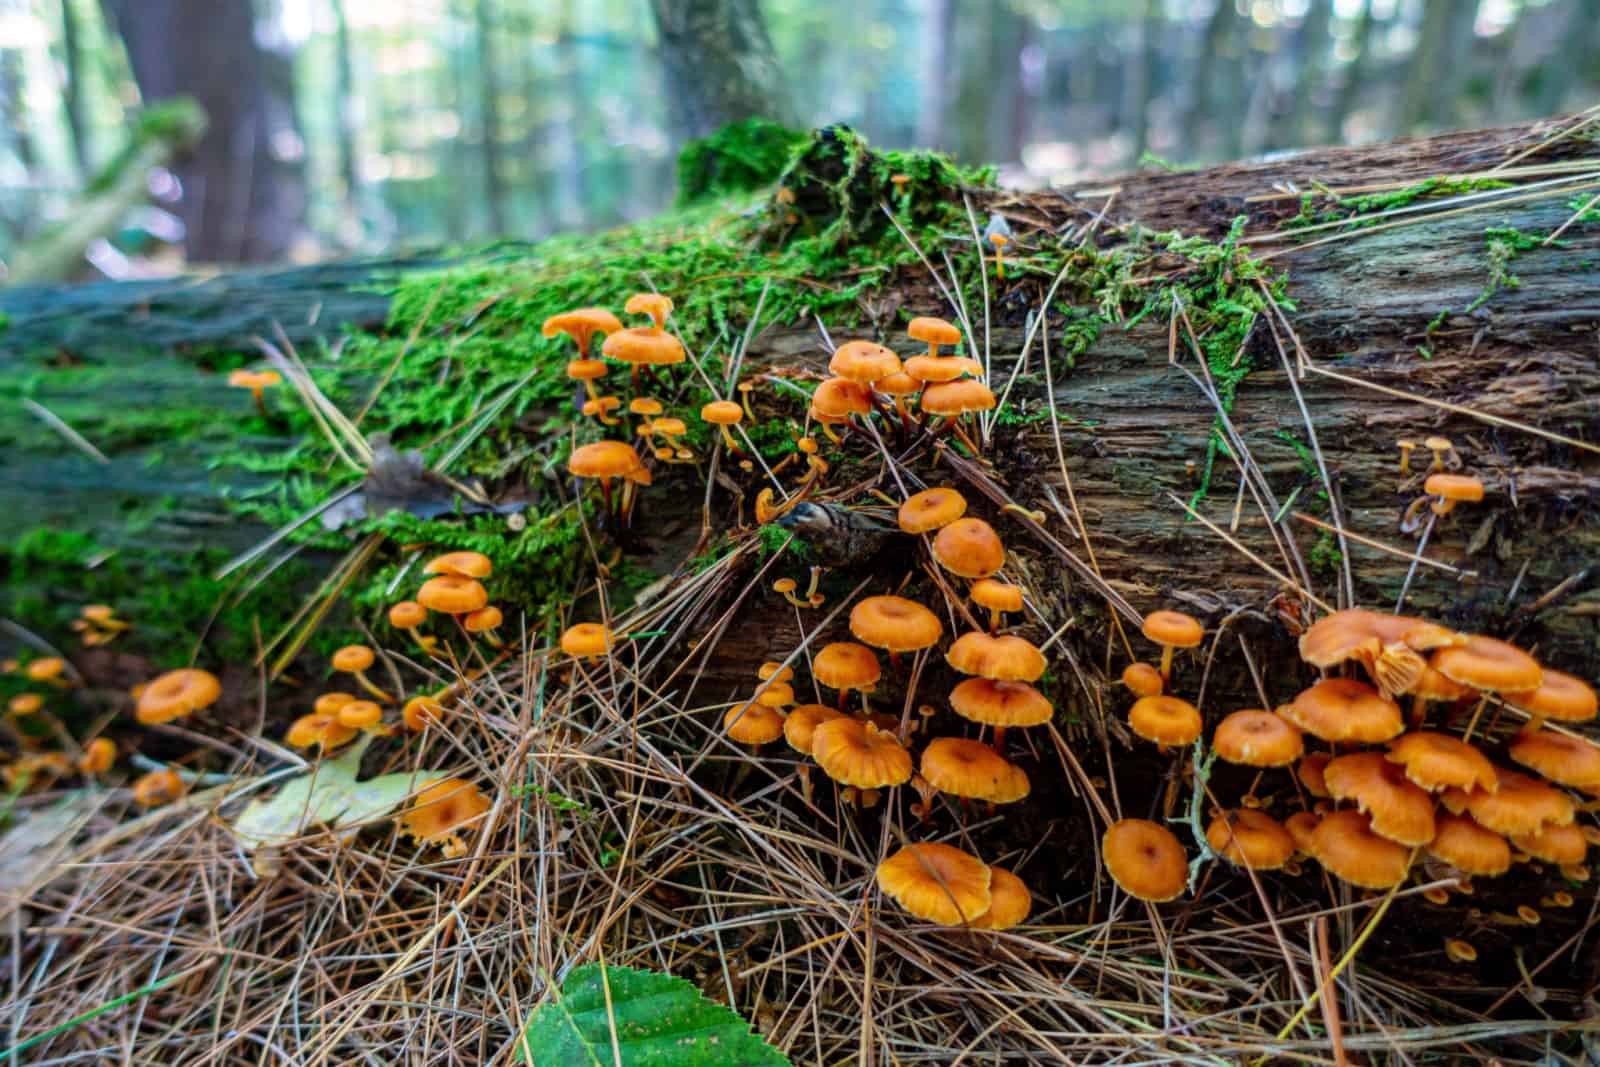 orange mushrooms on a log